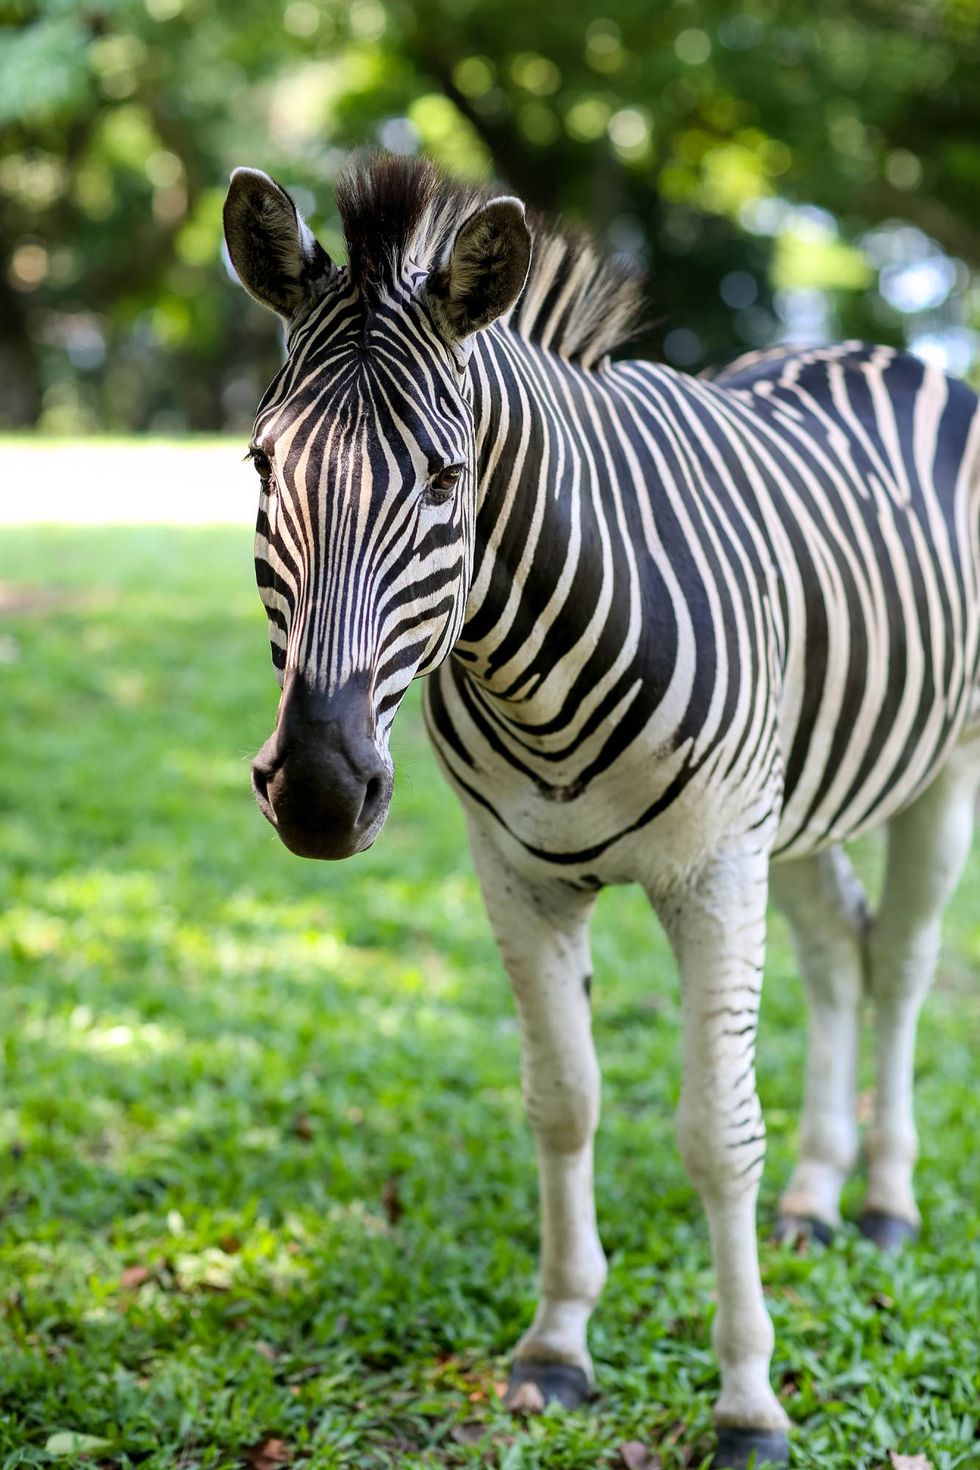 Zebra, Mammal, Terrestrial animal, Vertebrate, Wildlife, Grass, Green, Grassland, Snout, Pasture, 